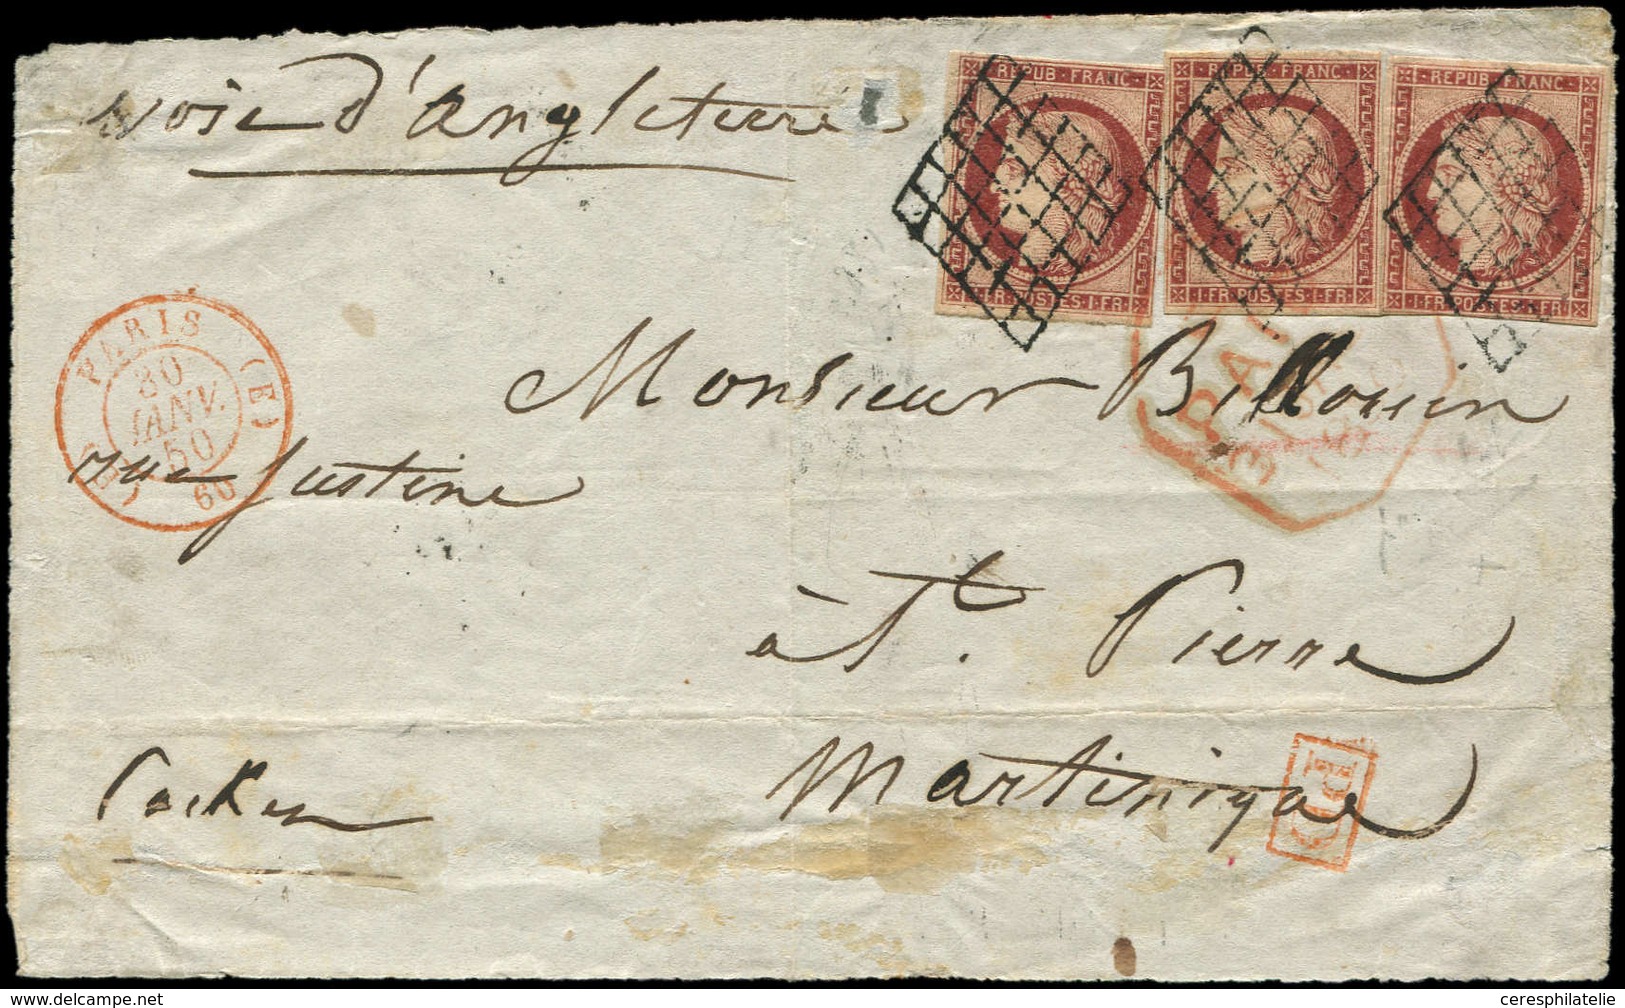 Let EMISSION DE 1849 - 6     1f. Carmin, 3 Ex. Dont 1 Touché Obl. GRILLE S. DL, Càd Rouge (E) PARIS (E) 30/1/50 Pour St  - 1849-1850 Ceres